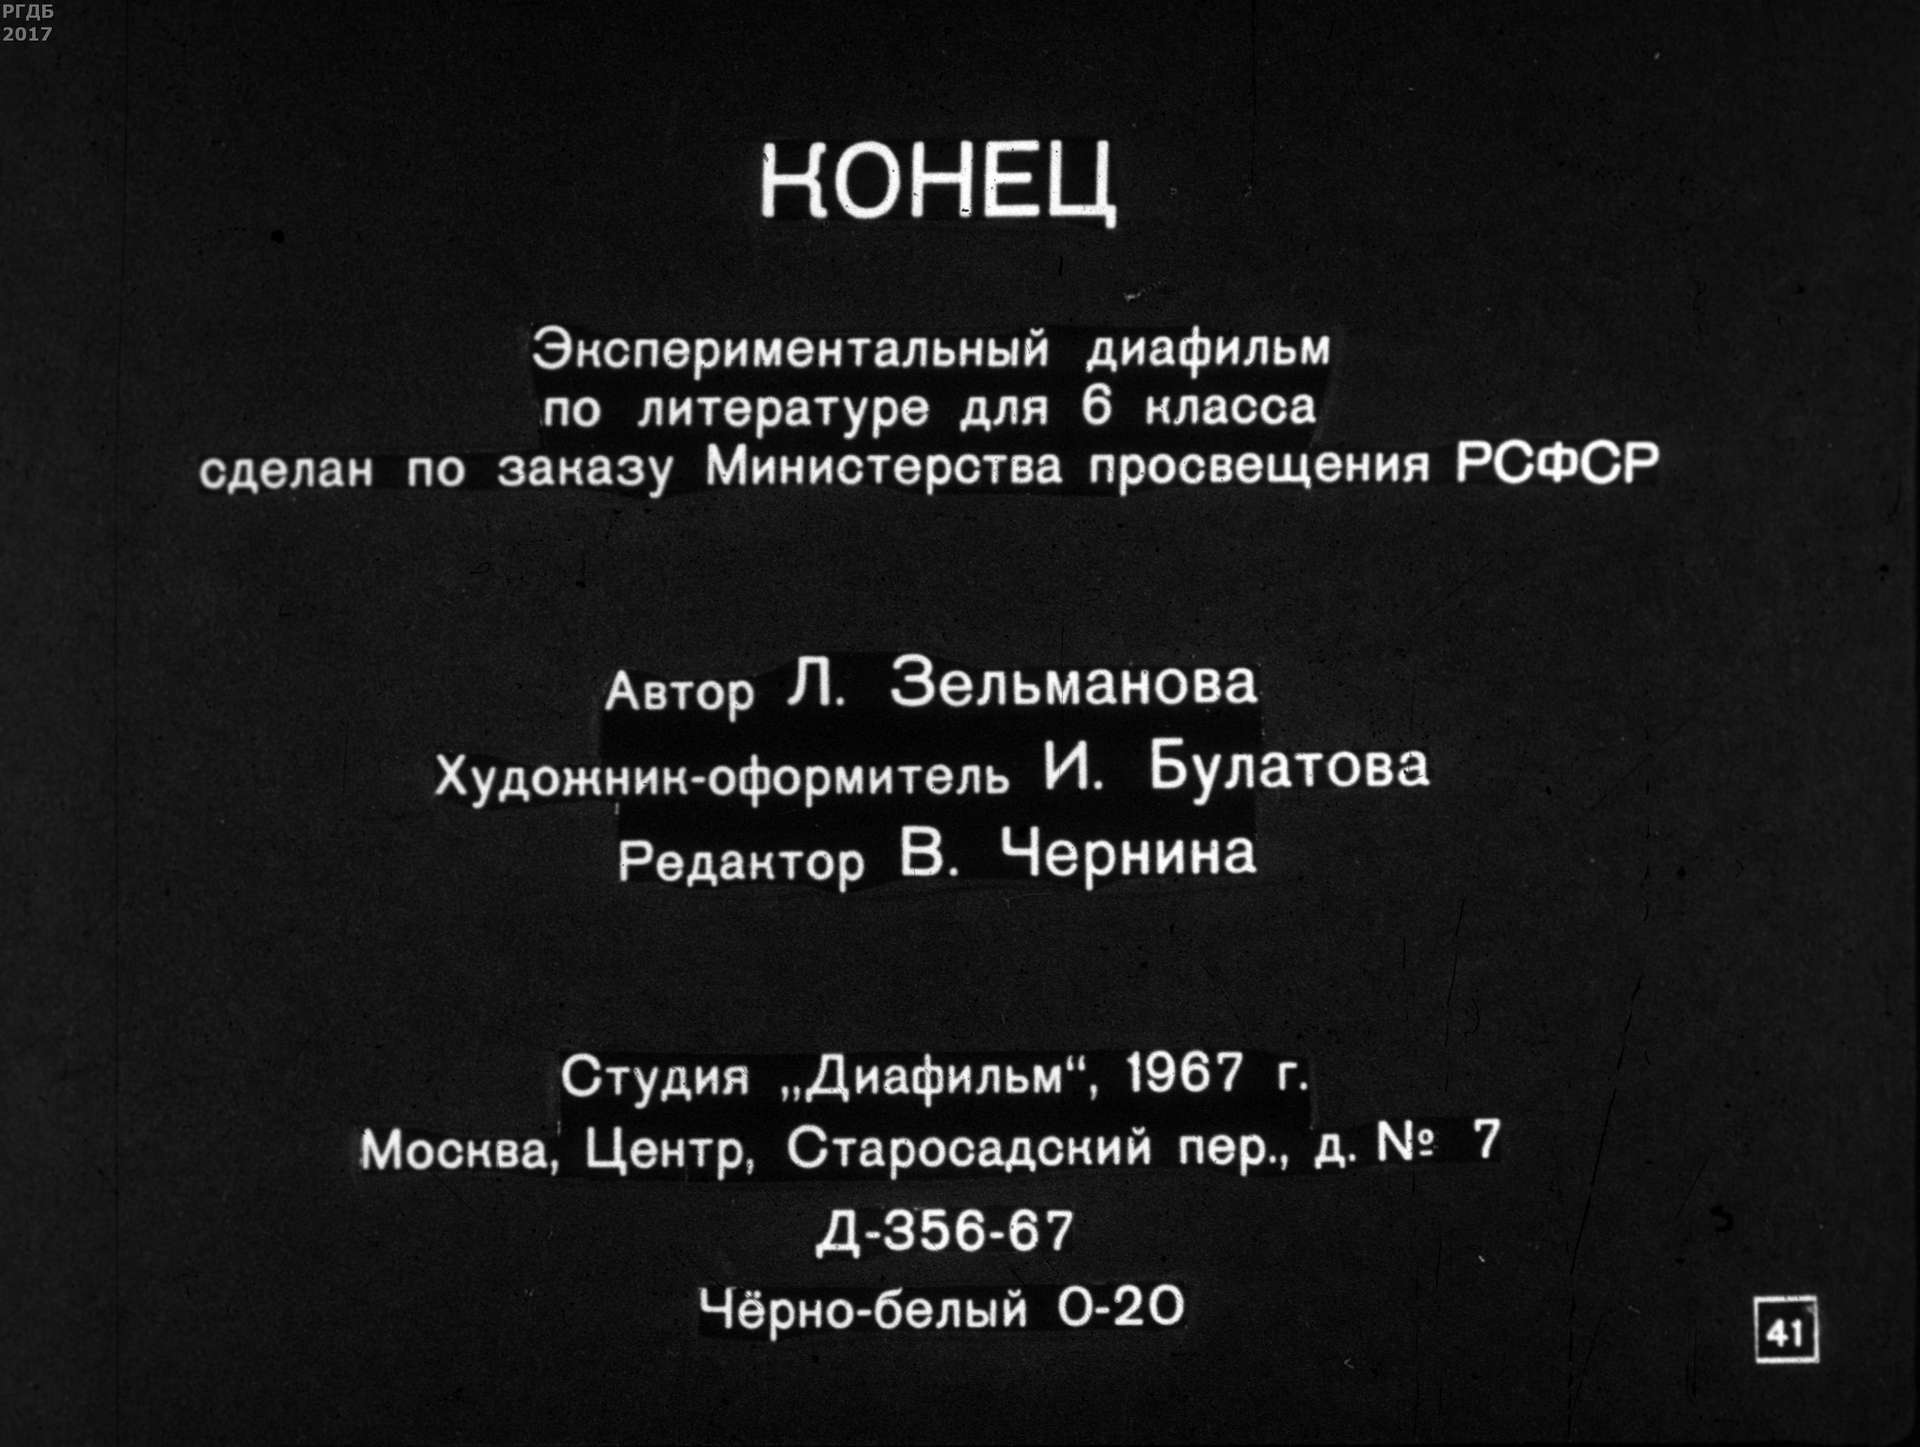 Рассказы А.П. Чехова (1967)